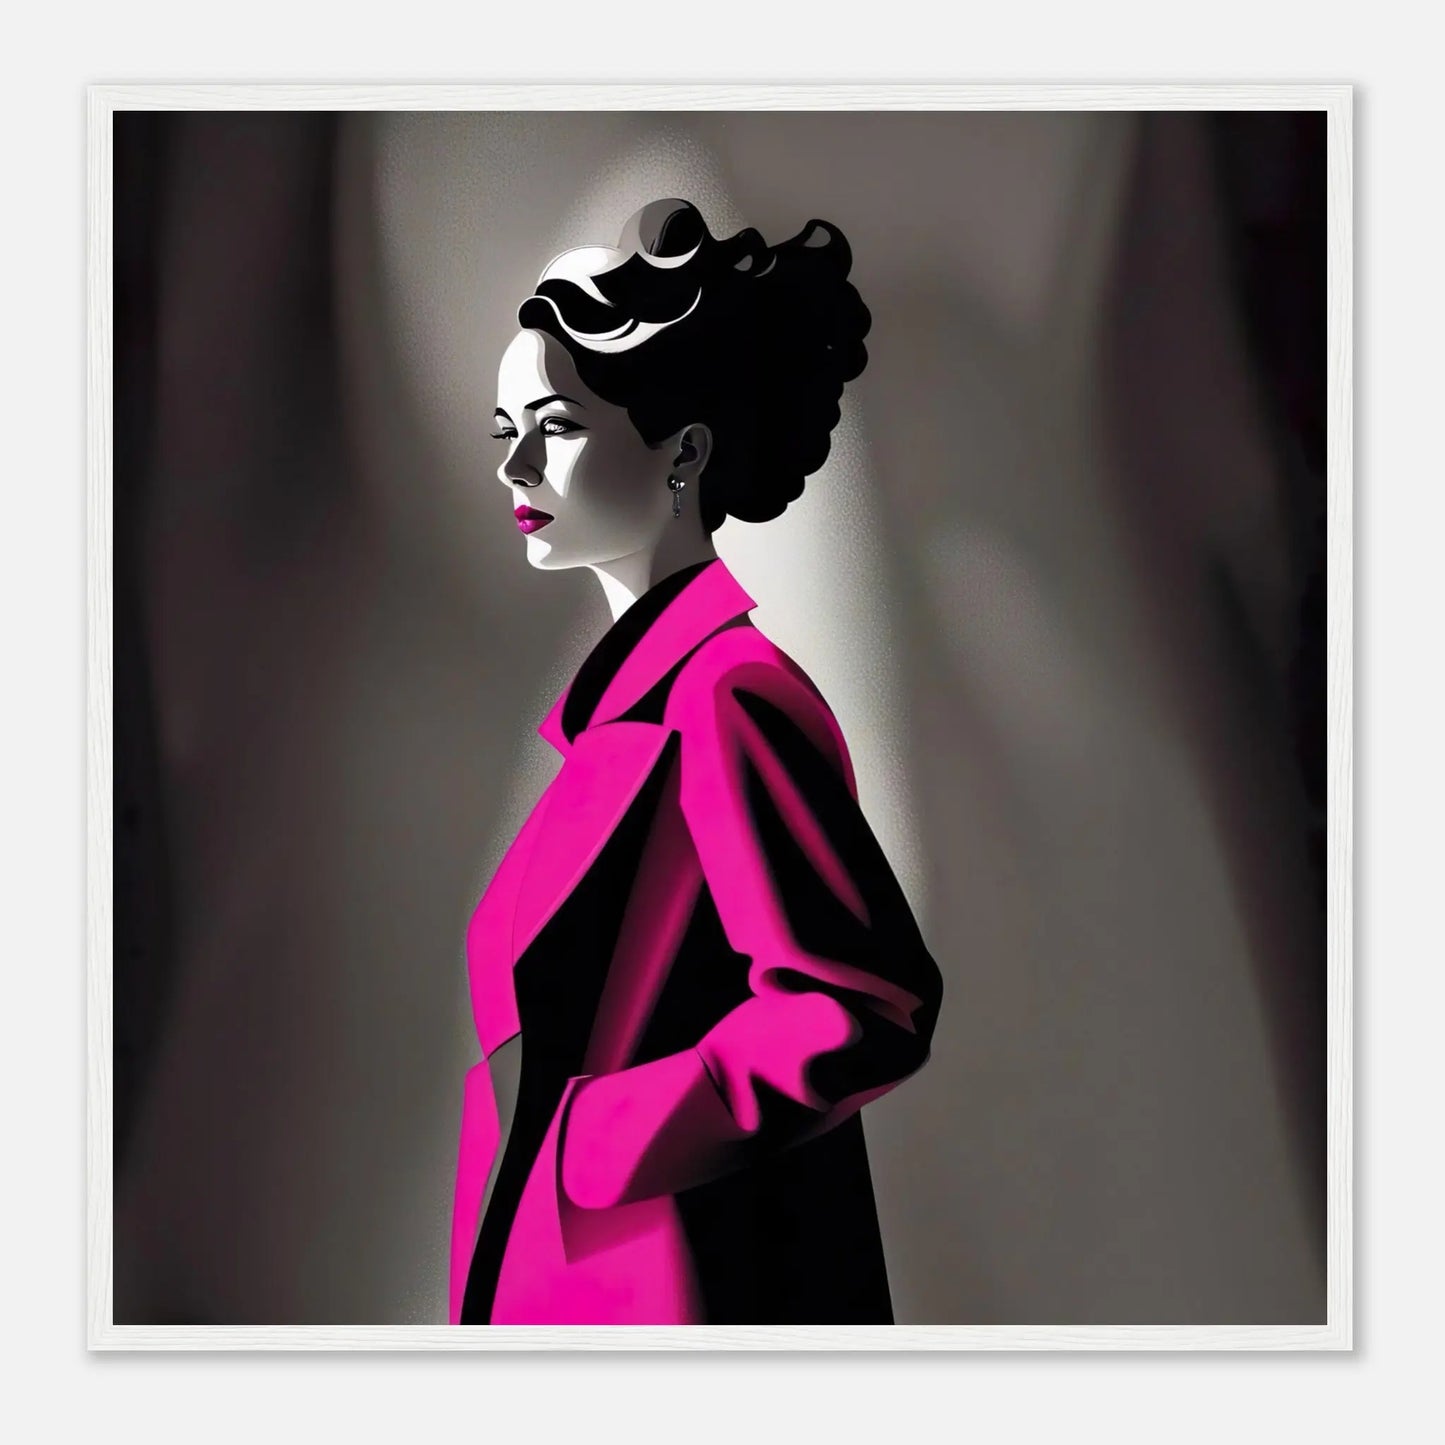 Gerahmtes Premium-Poster - Frau im rosa Mantel - Schwarz-Weiß, KI-Kunst - RolConArt, Schwarz-Weiß mit Akzentfarben, 70x70-cm-28x28-Weißer-Rahmen